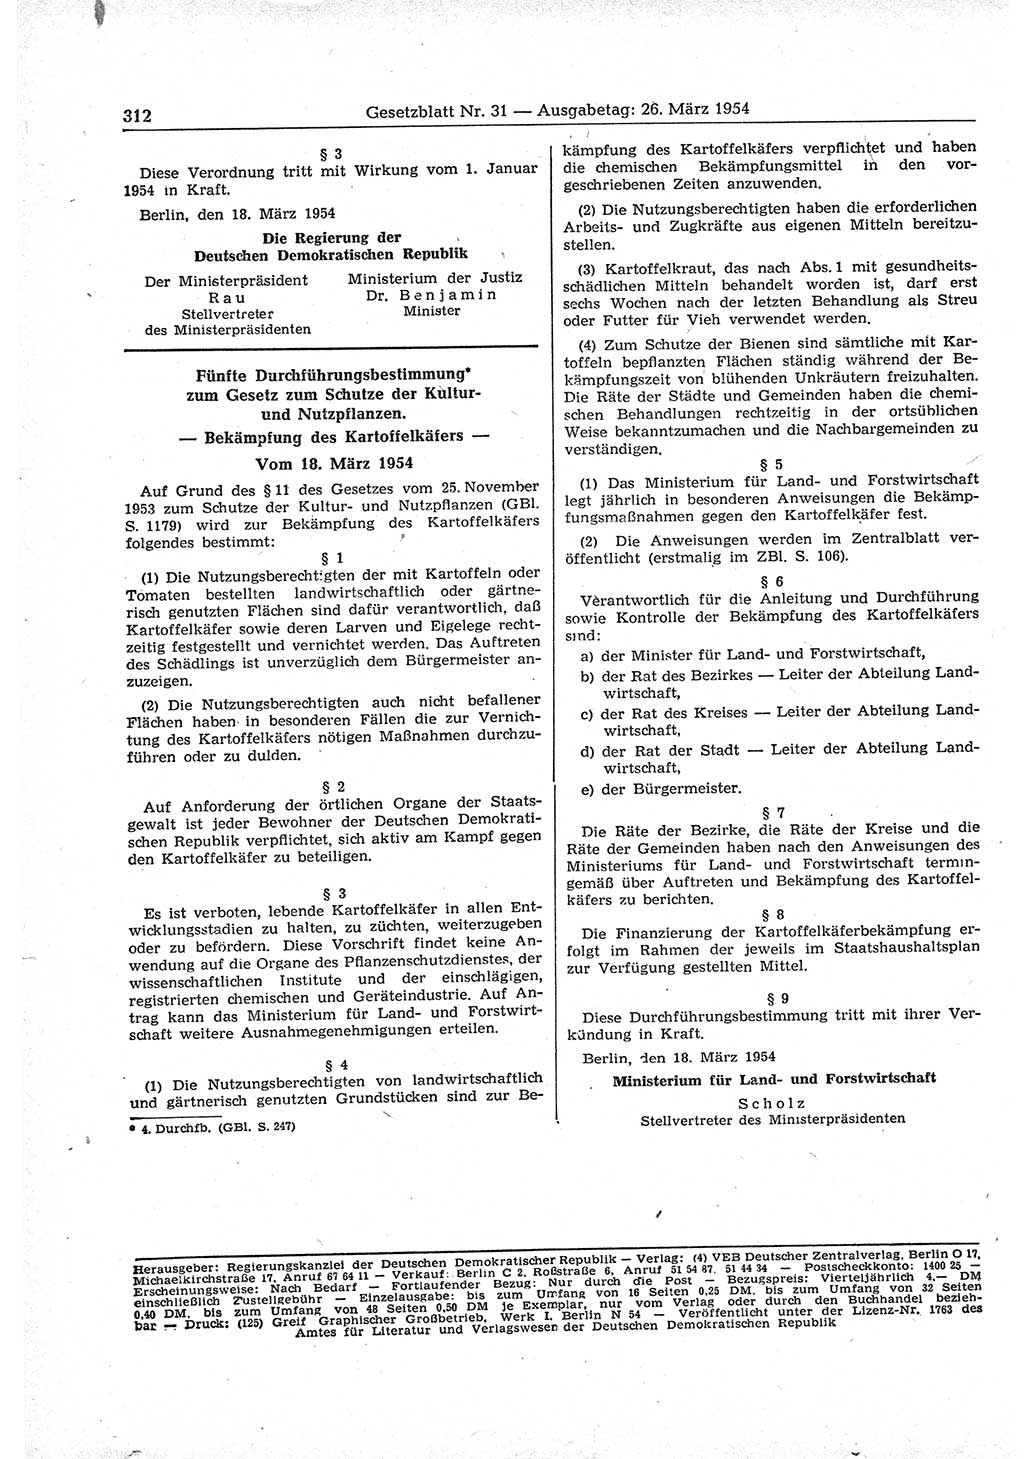 Gesetzblatt (GBl.) der Deutschen Demokratischen Republik (DDR) 1954, Seite 312 (GBl. DDR 1954, S. 312)